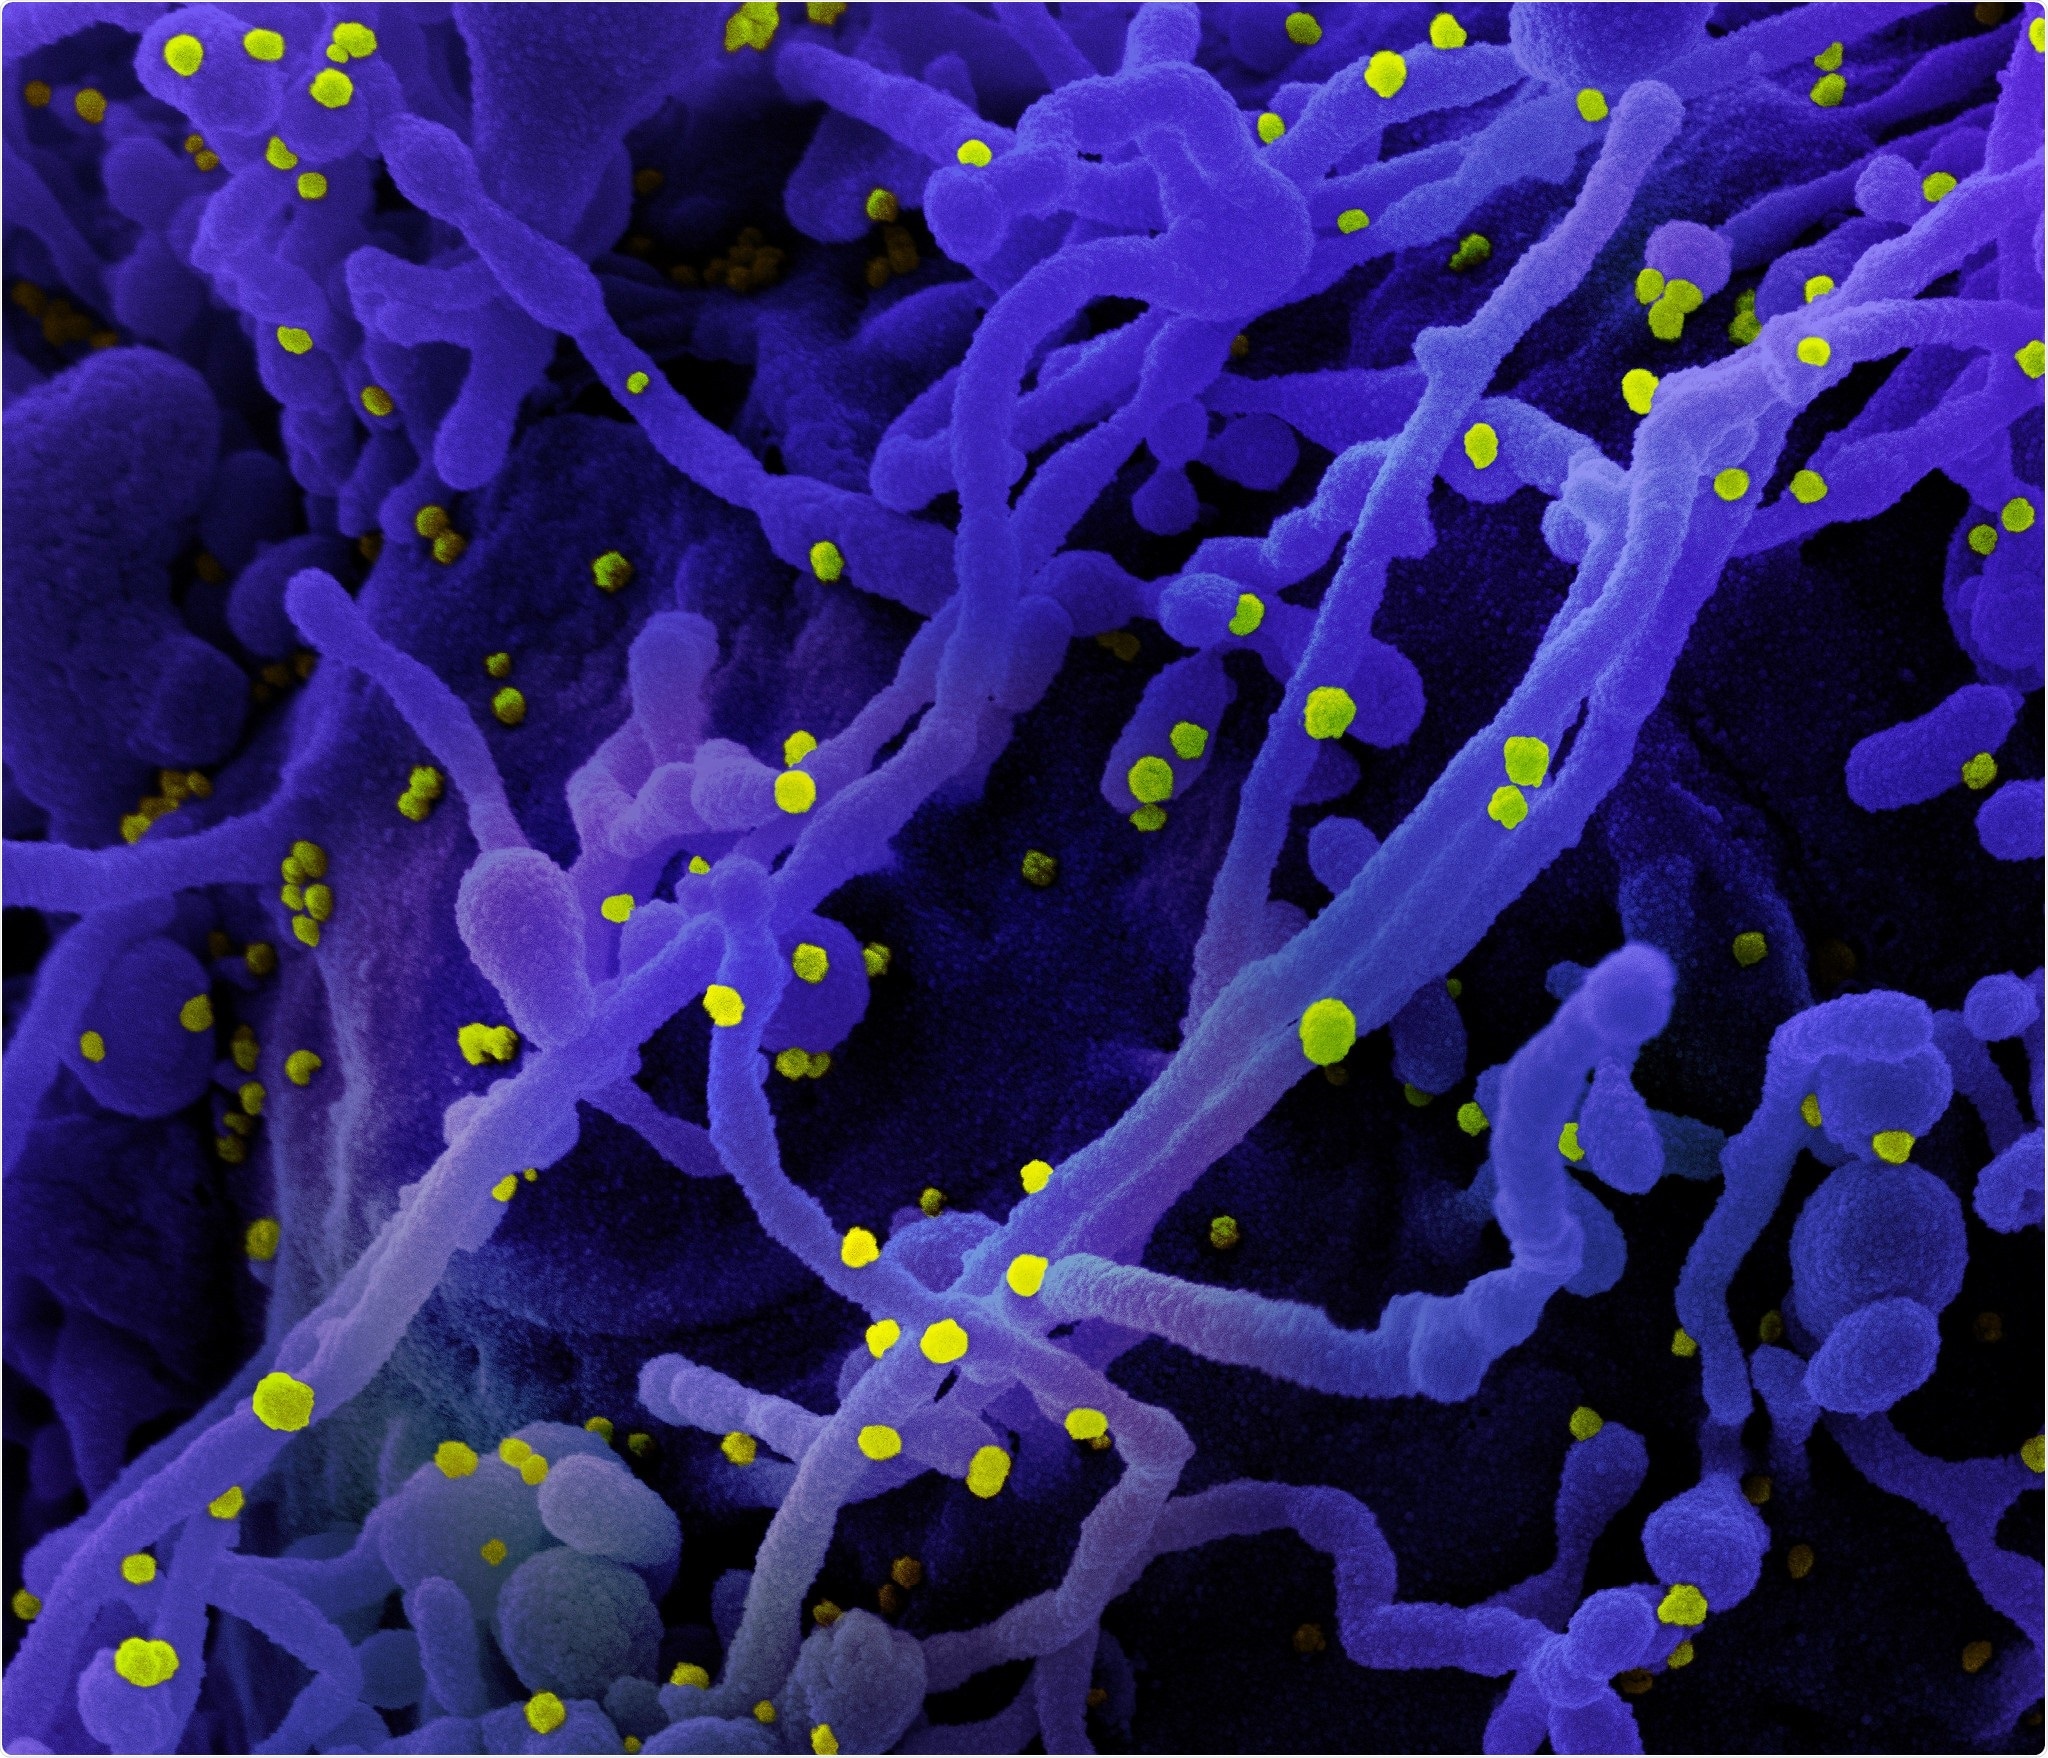 Micrografia de elétron nova da exploração de Coronavirus SARS-CoV-2 Colorized de uma pilha (roxa) contaminada com as partículas do vírus SARS-COV-2 (amarelo), isoladas de uma amostra paciente. A imagem capturada no NIAID integrou a instalação de investigação no forte Detrick, Maryland. Crédito: NIAID